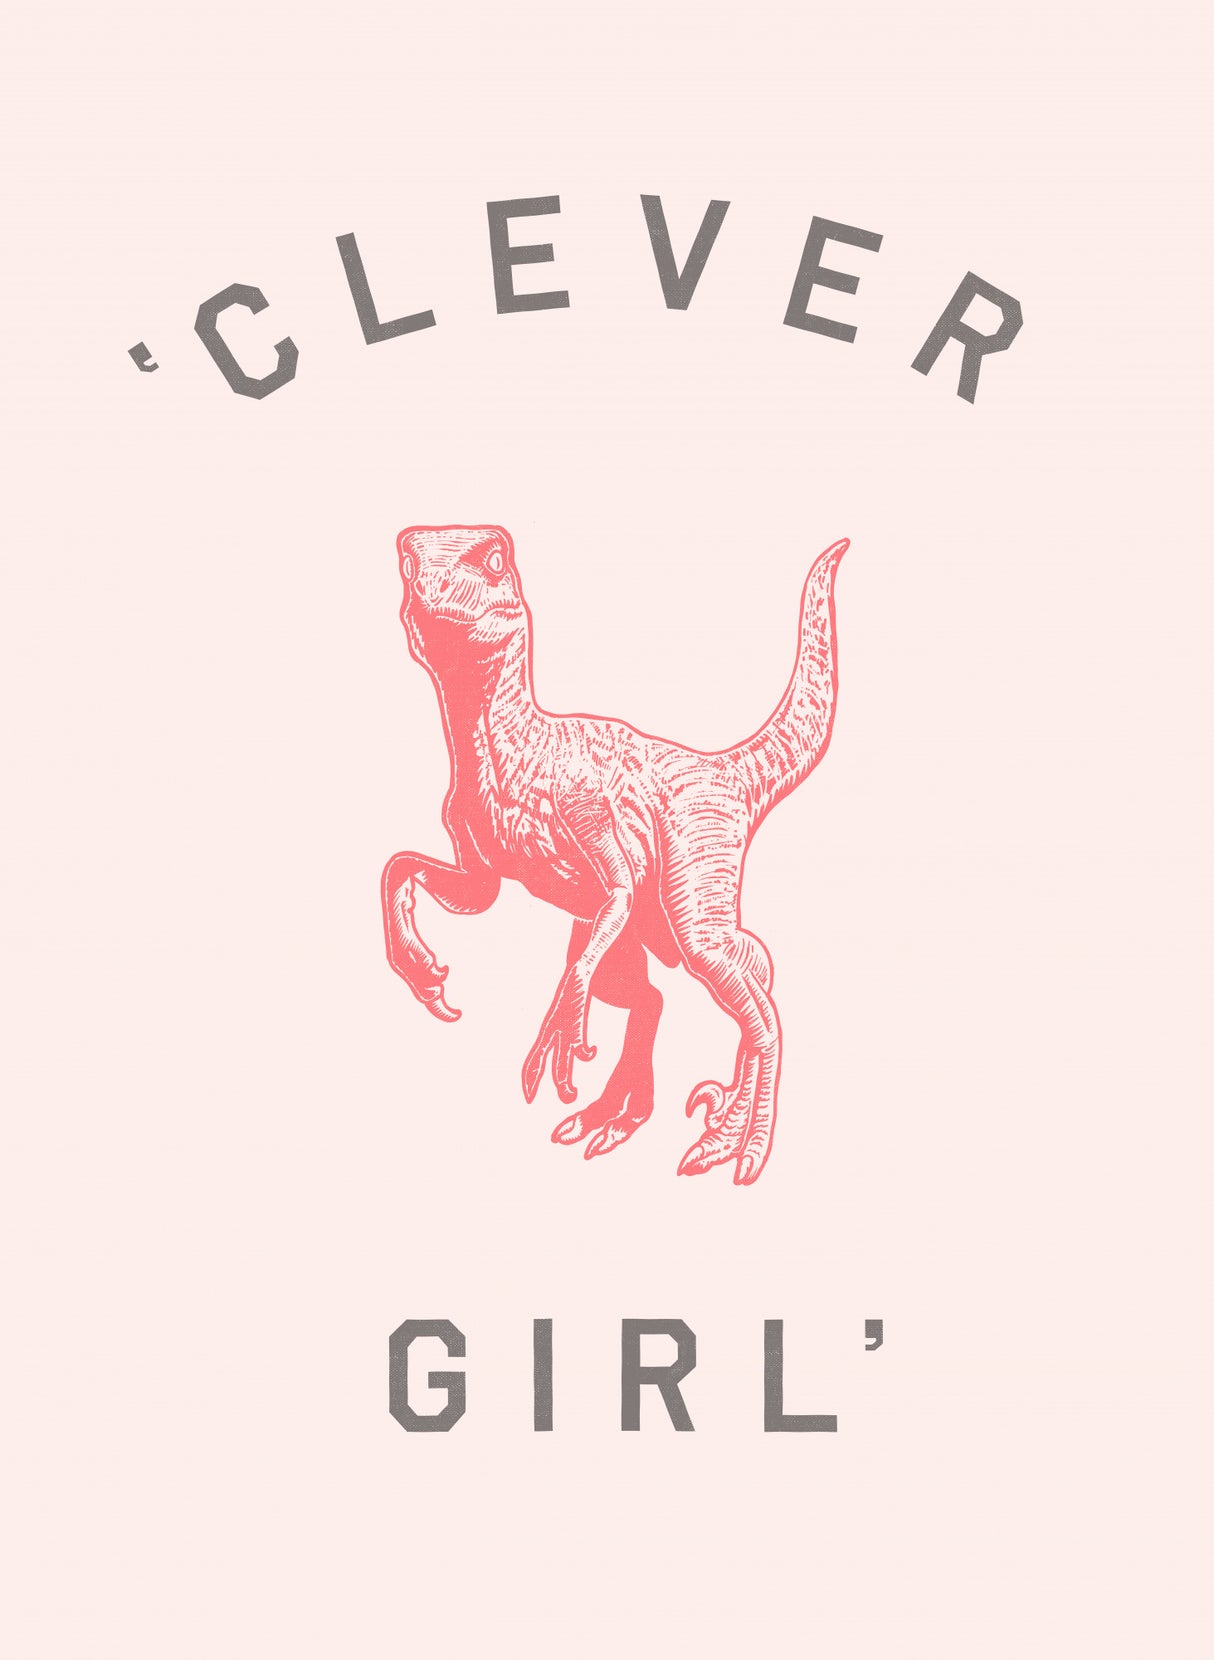 Clever Girl Poster och Canvastavla